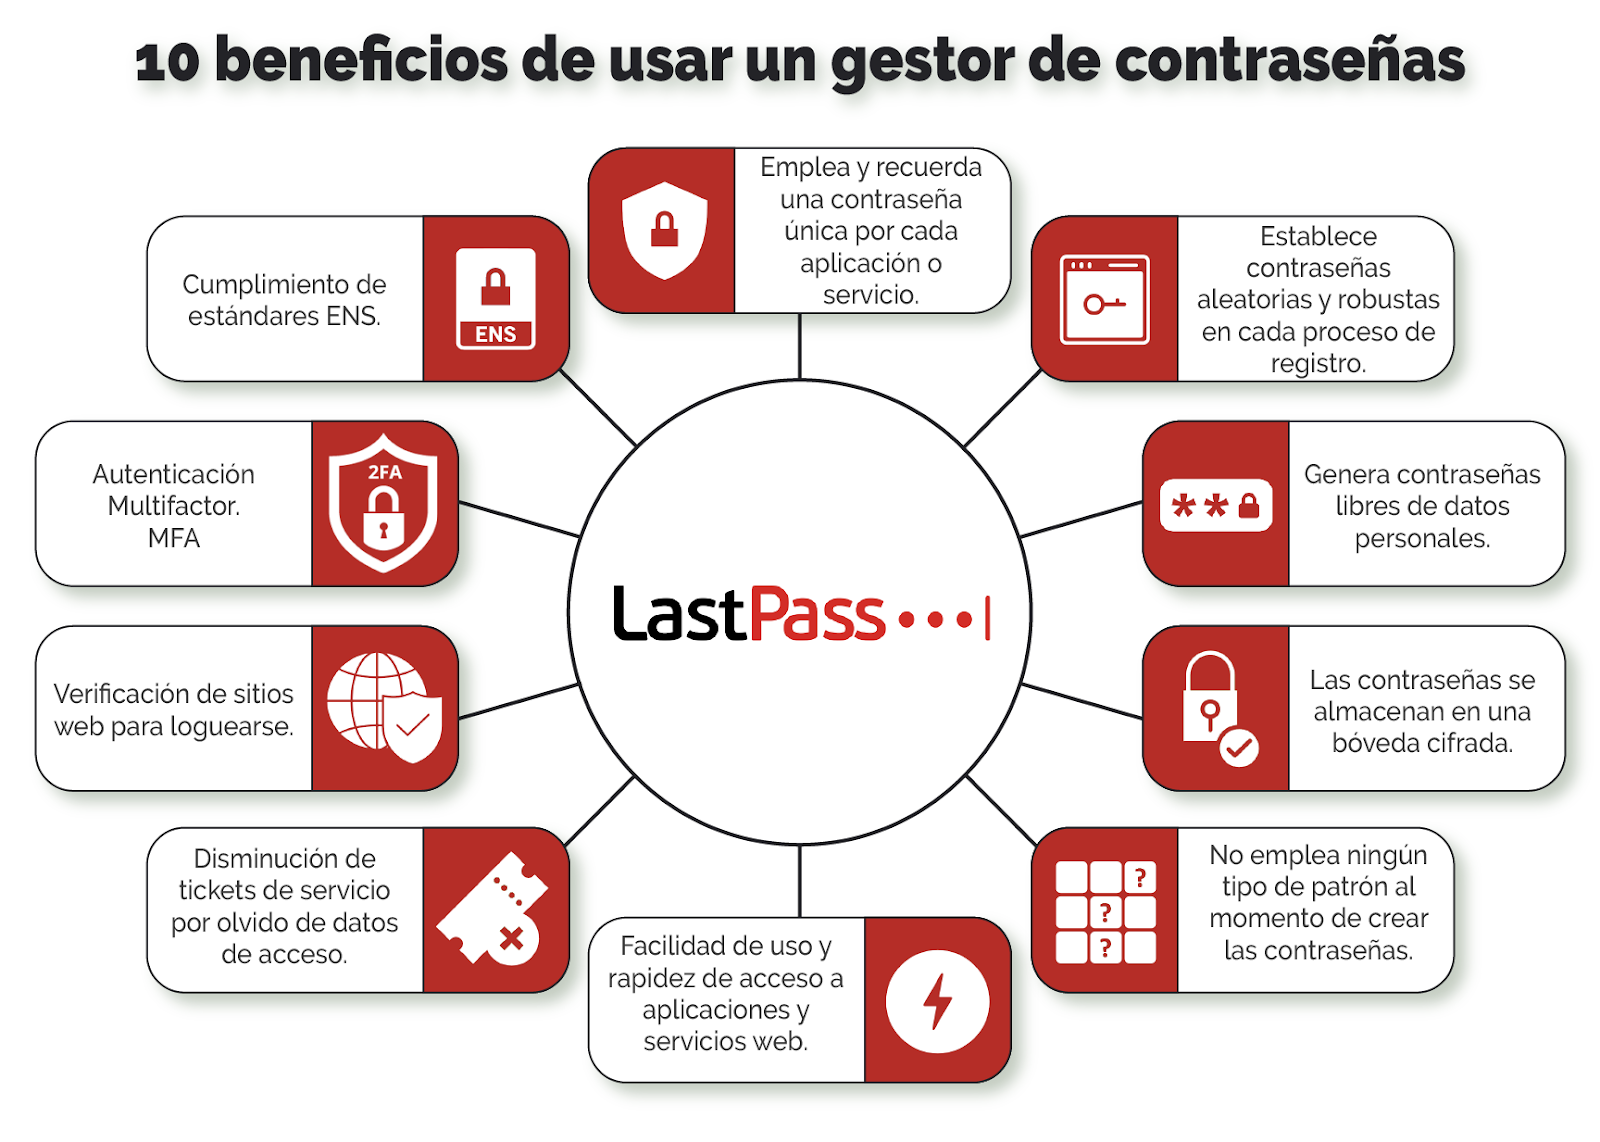 Usar un gestor de contraseñas como LastPass aporta no solo estos beneficios, la verdad son muchos más.